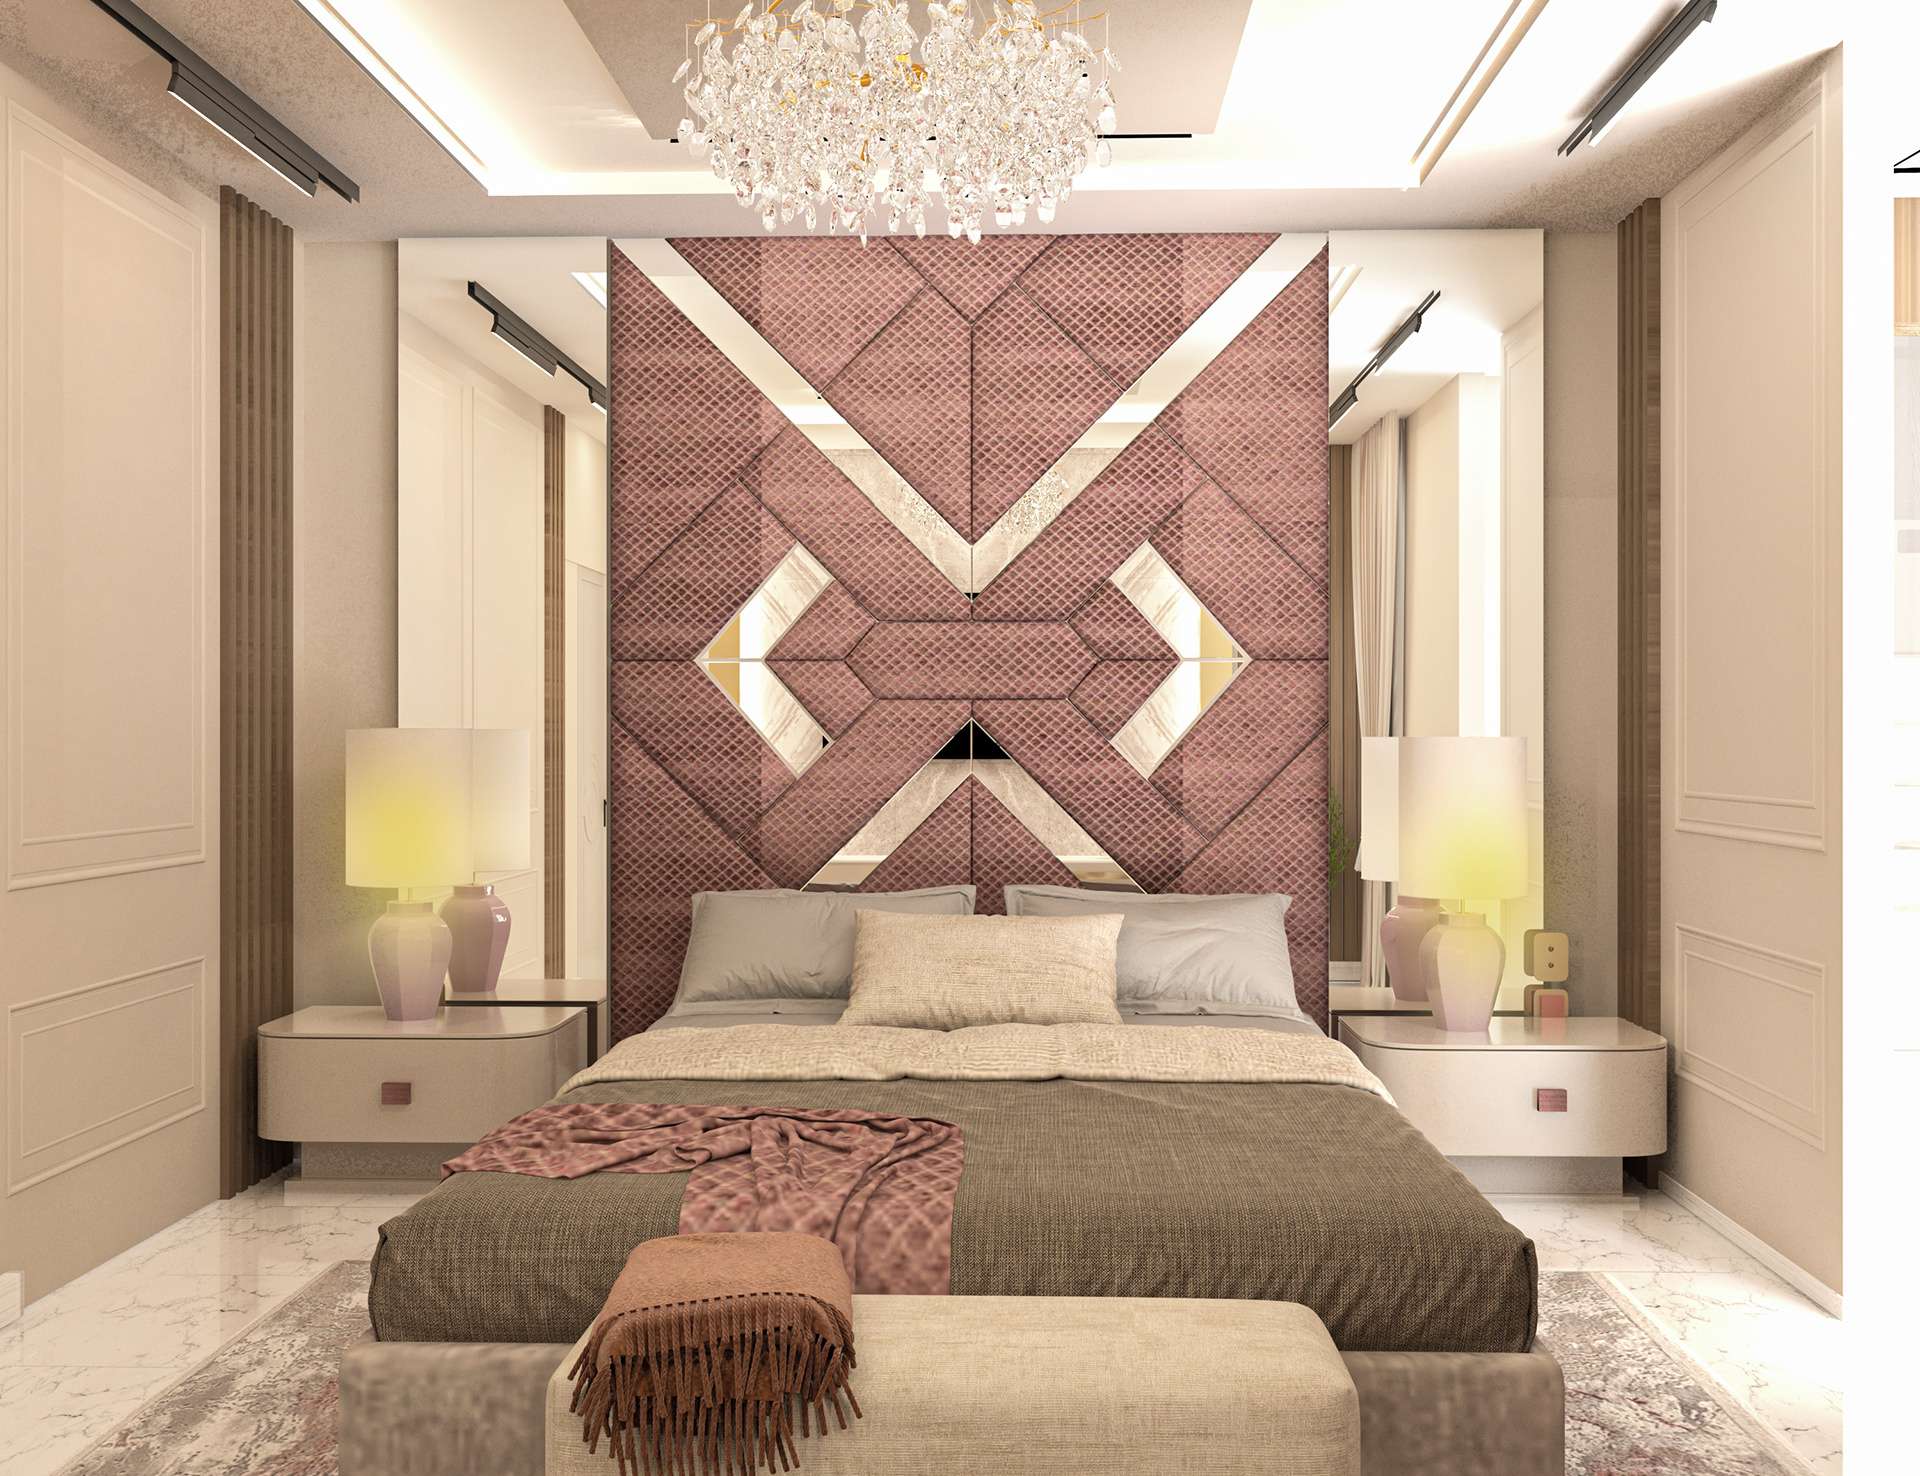 Phòng ngủ Indochine độc đáo mang sự khác biệt cho không gian